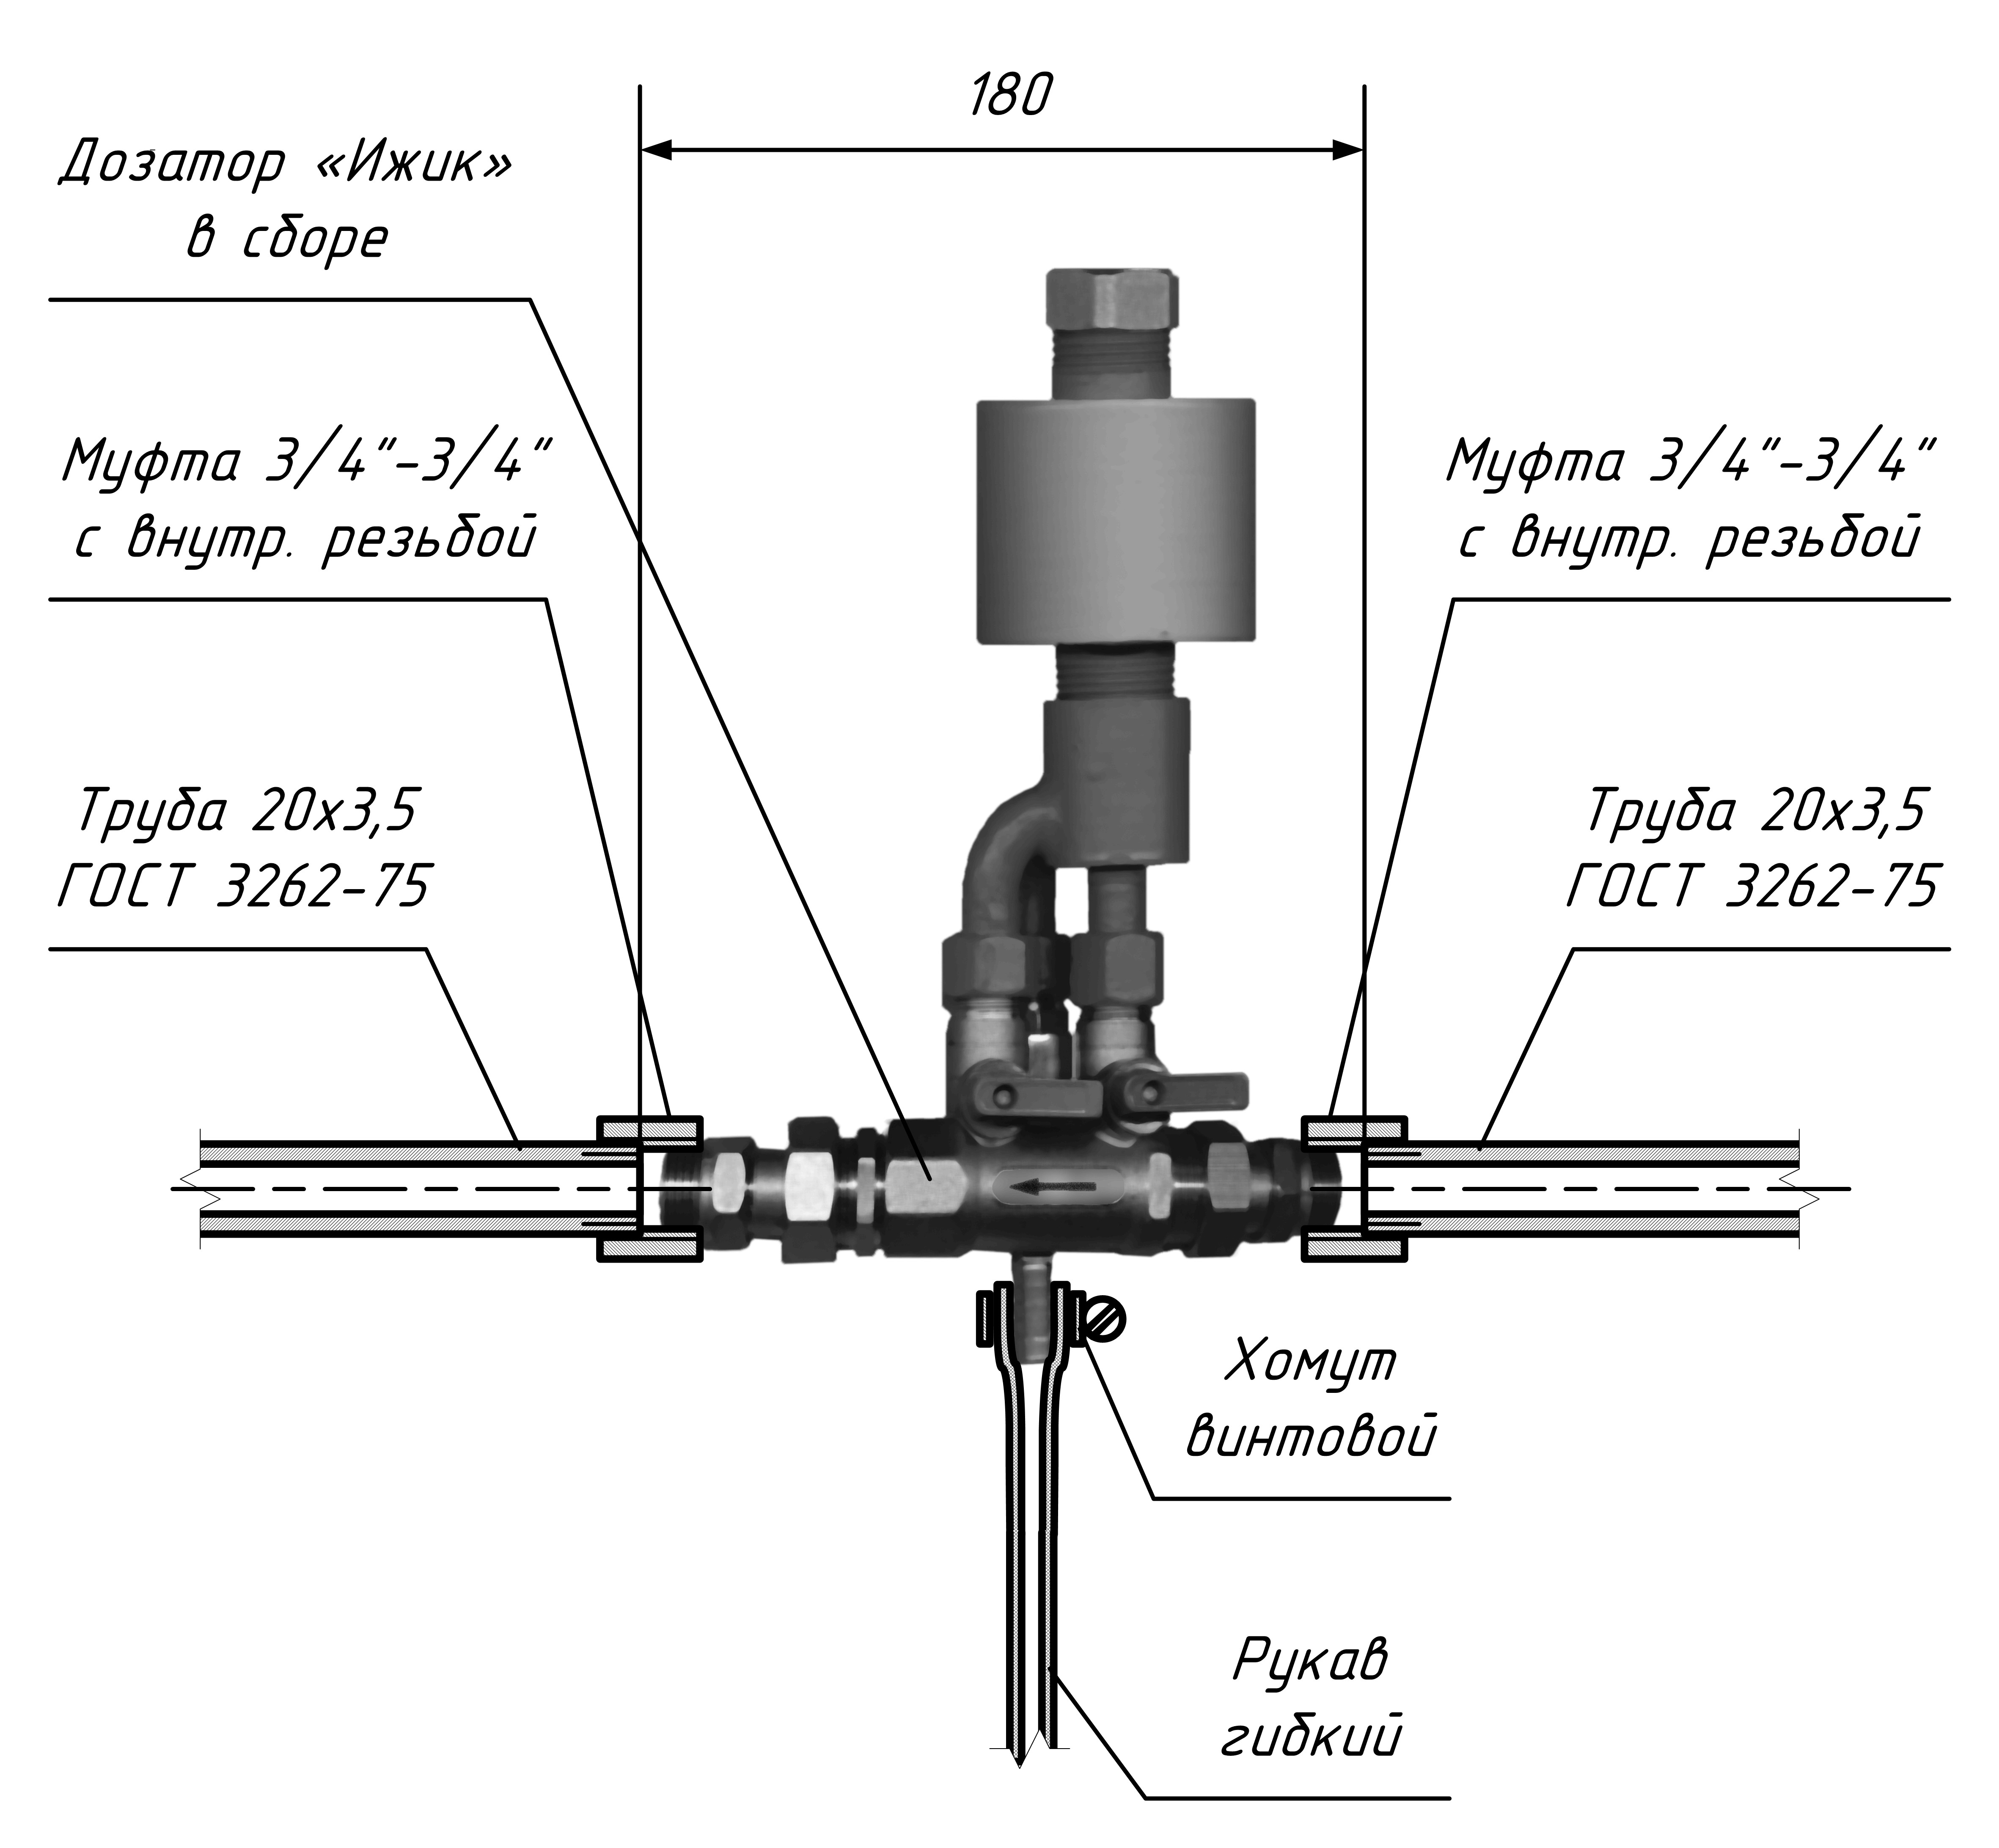  Схема монтажа мини-дозатора «Ижик»
на трубопроводе условным проходом 20 мм (3/4